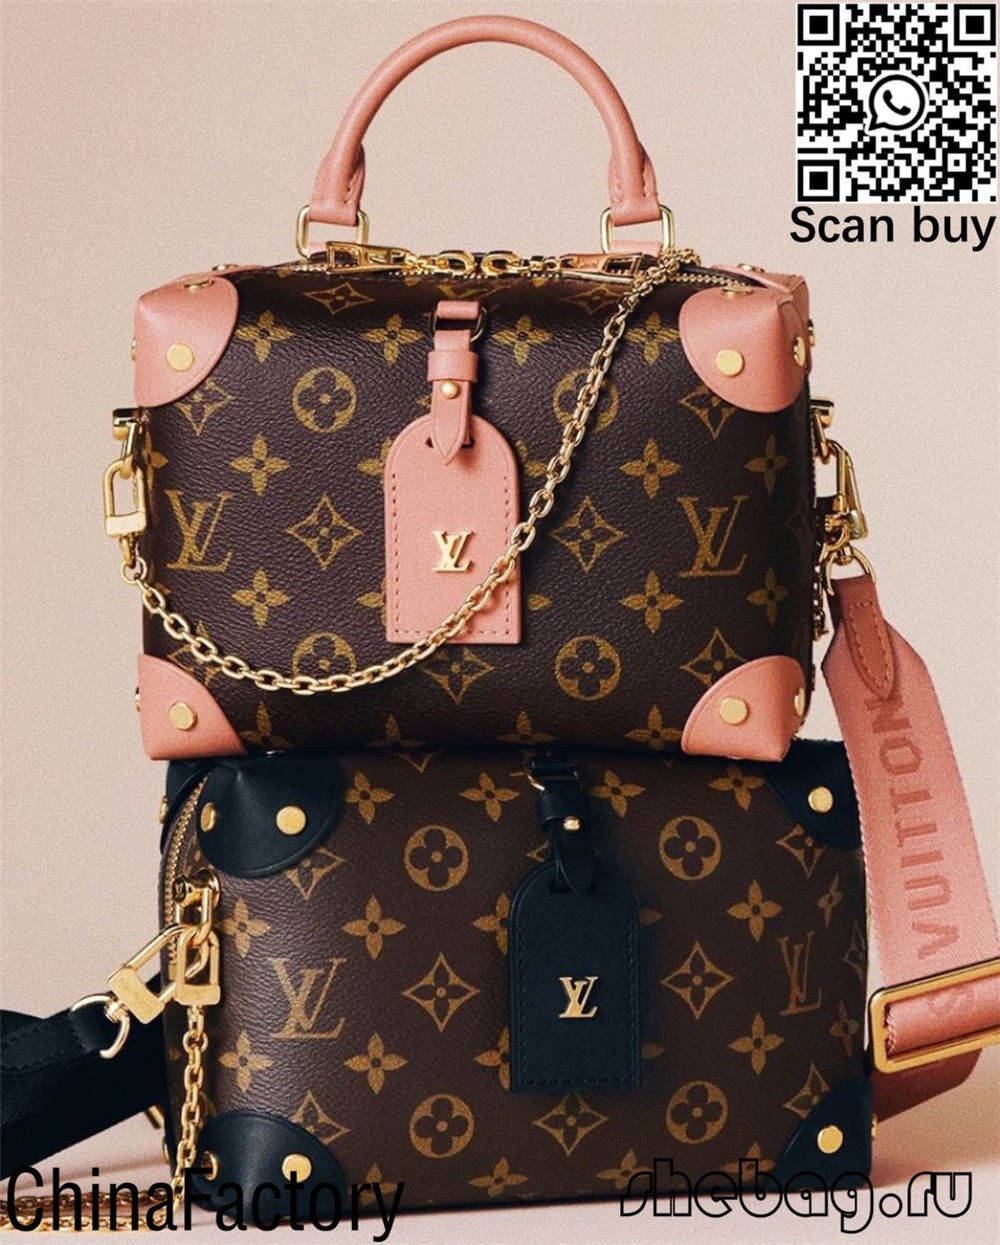 Louis duffle bag replica wholssale (2022 lata mai)-Tagata Lelei Fake Louis Vuitton Bag Faleoloa i luga ole laiga, Replica designer bag ru